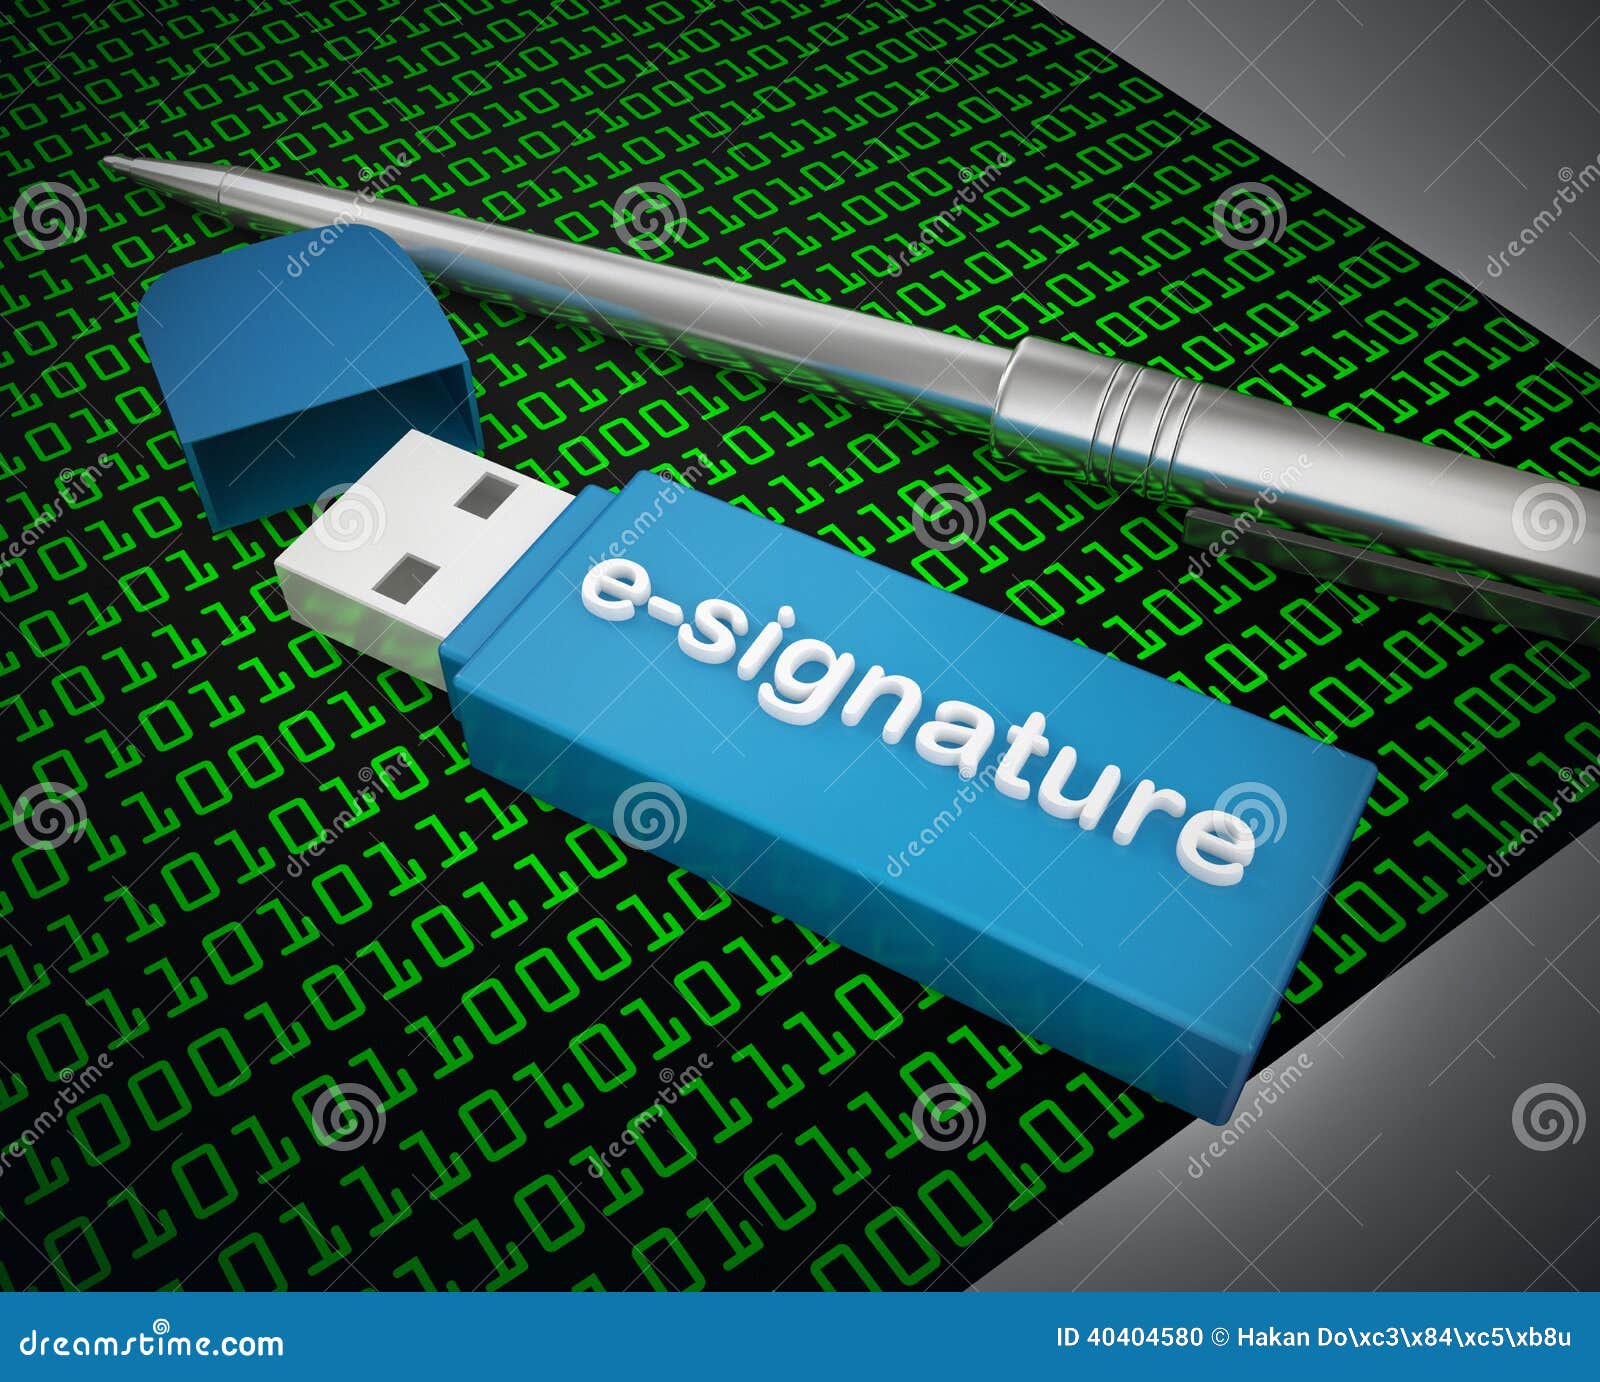 e-signature